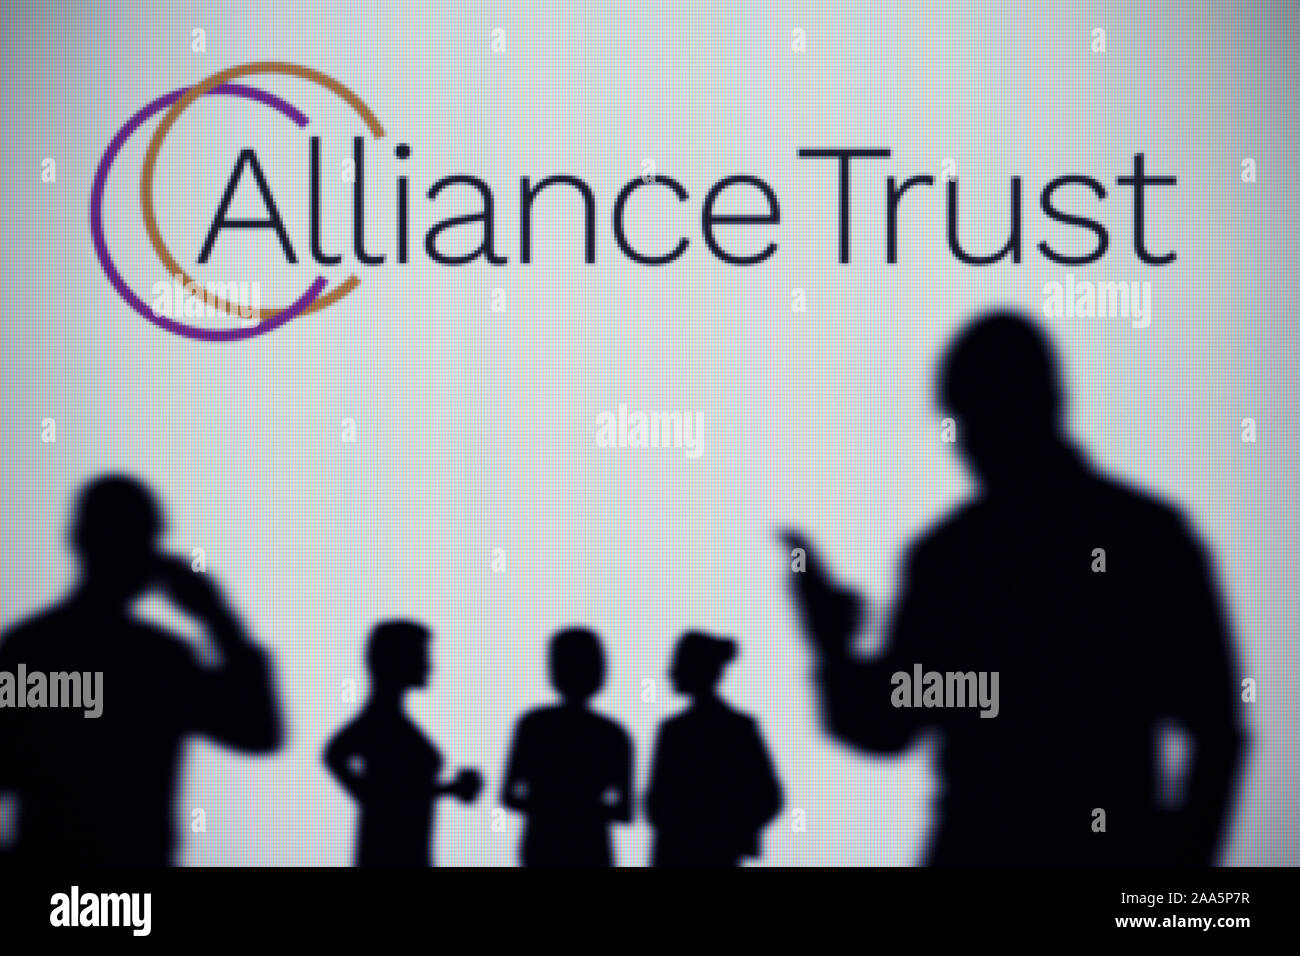 Die Alliance Trust Logo ist auf einen LED-Bildschirm im Hintergrund, während eine Silhouette Person ein Smartphone verwendet (nur redaktionelle Nutzung) Stockfoto